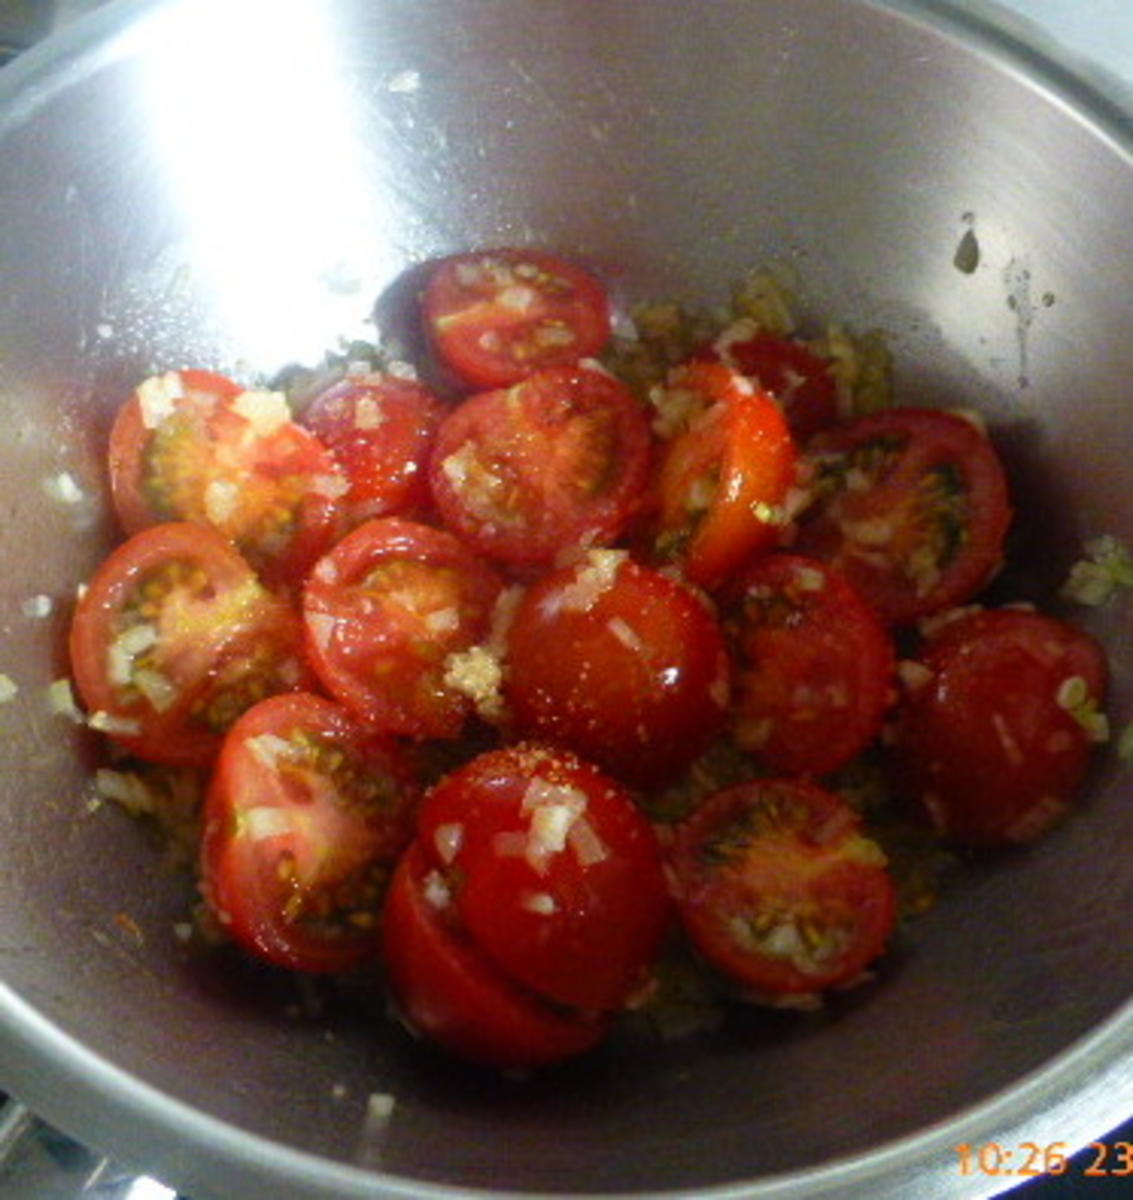 Involtini von der Aubergine in Zimt-Tomaten-Sauce - Rezept - Bild Nr. 132